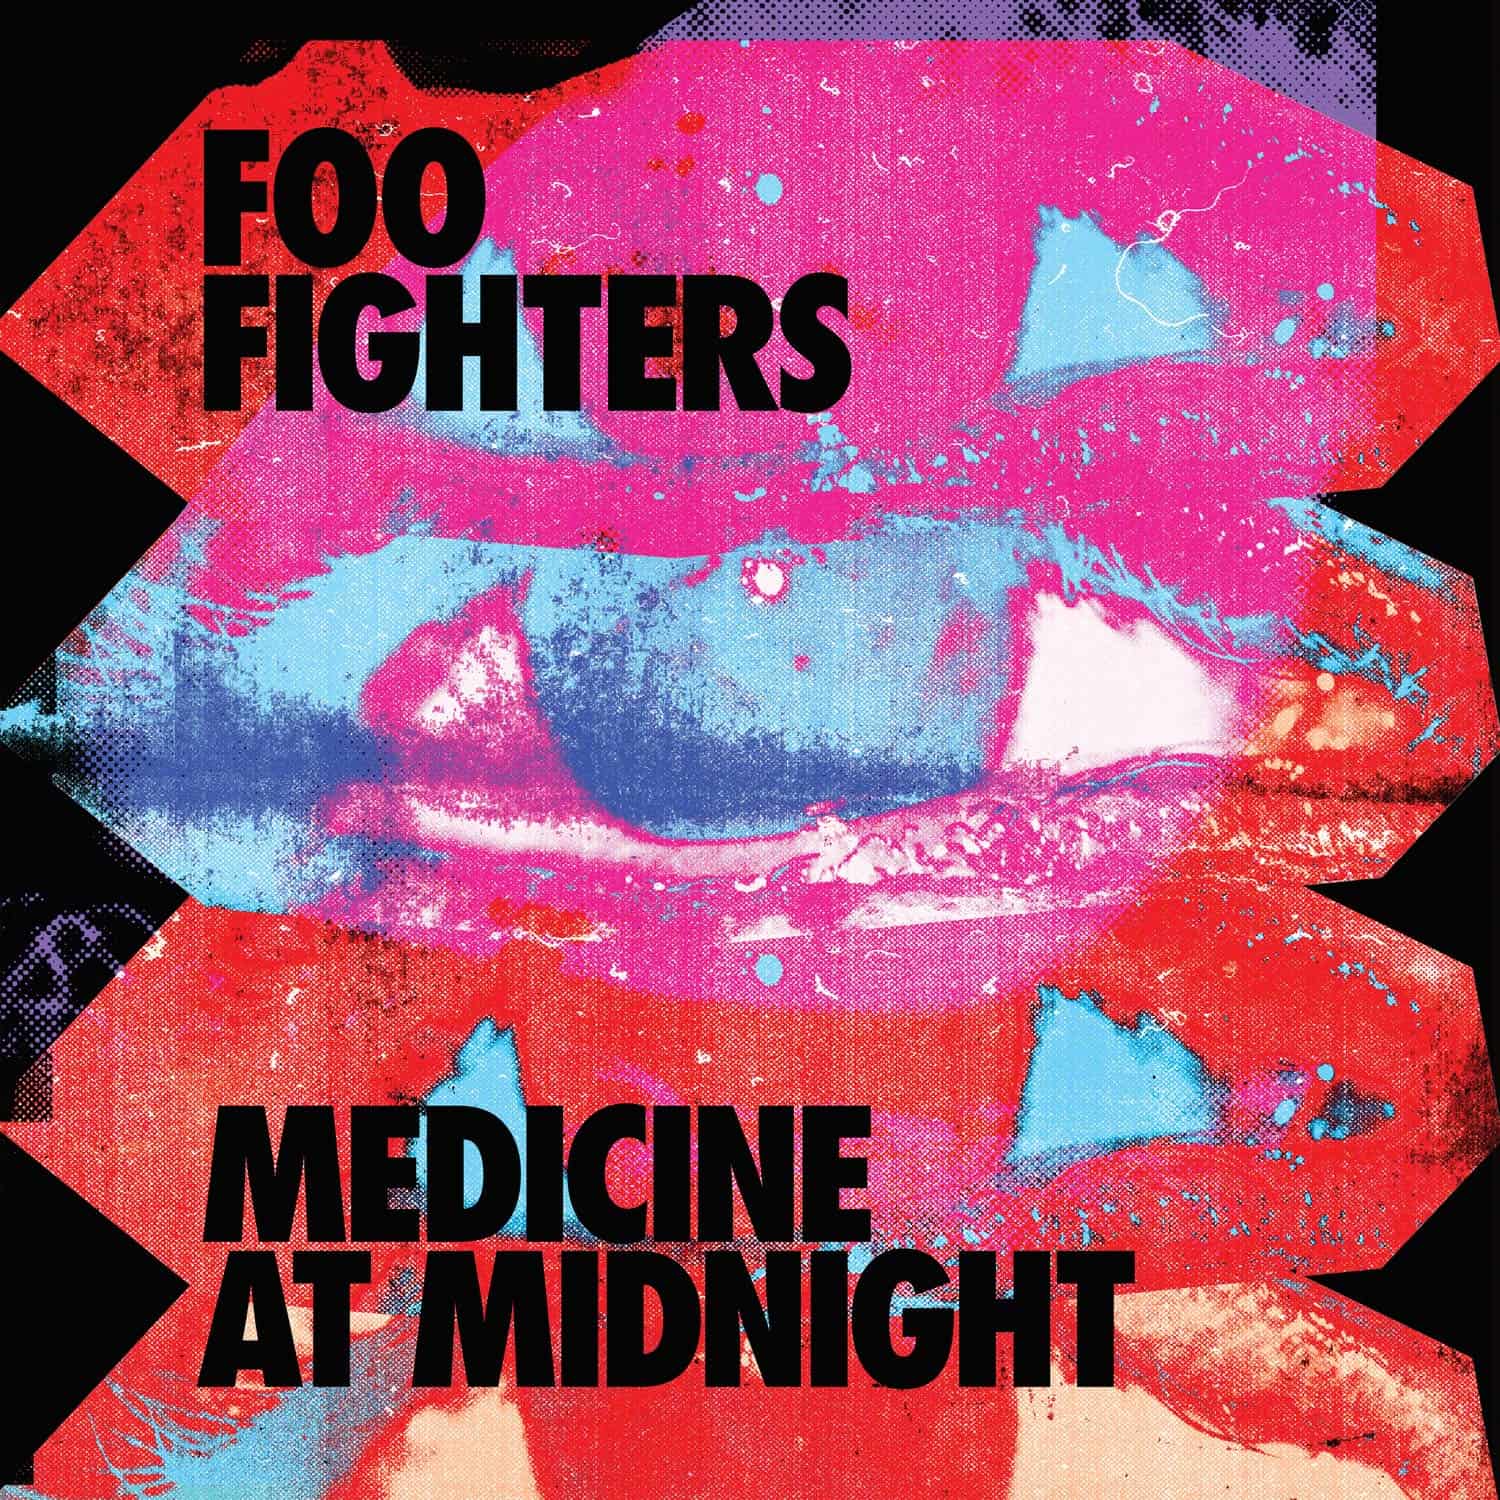 foo-fighters-medicine-at-midnight-vinyl-record-album1